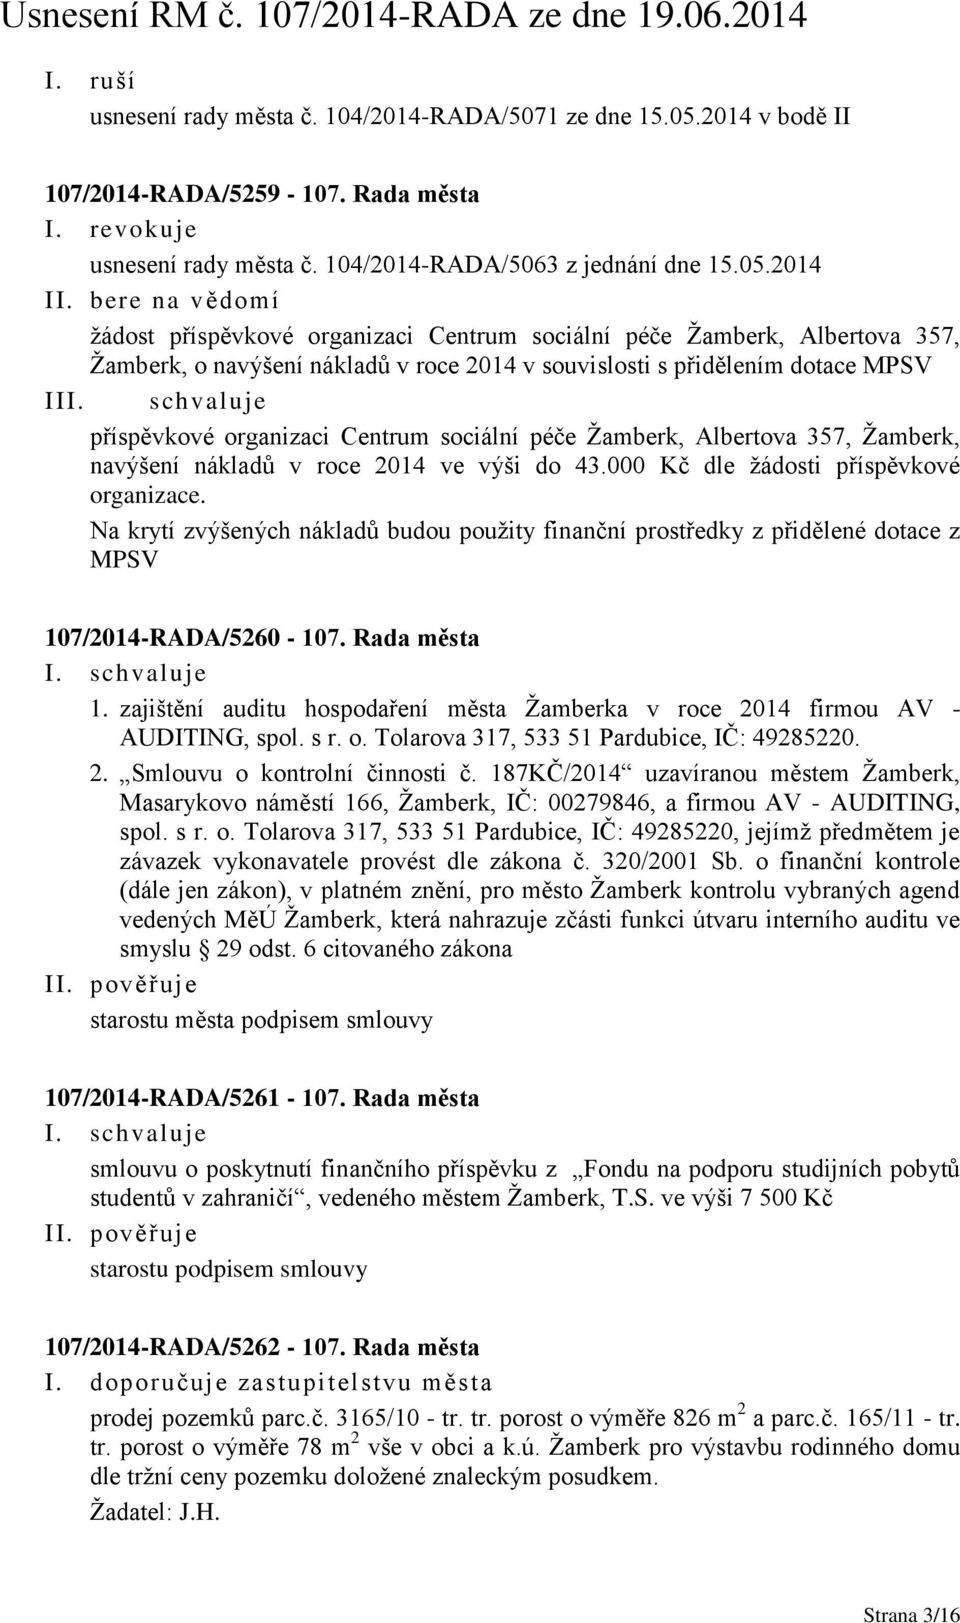 2014 I žádost příspěvkové organizaci Centrum sociální péče Žamberk, Albertova 357, Žamberk, o navýšení nákladů v roce 2014 v souvislosti s přidělením dotace MPSV II příspěvkové organizaci Centrum